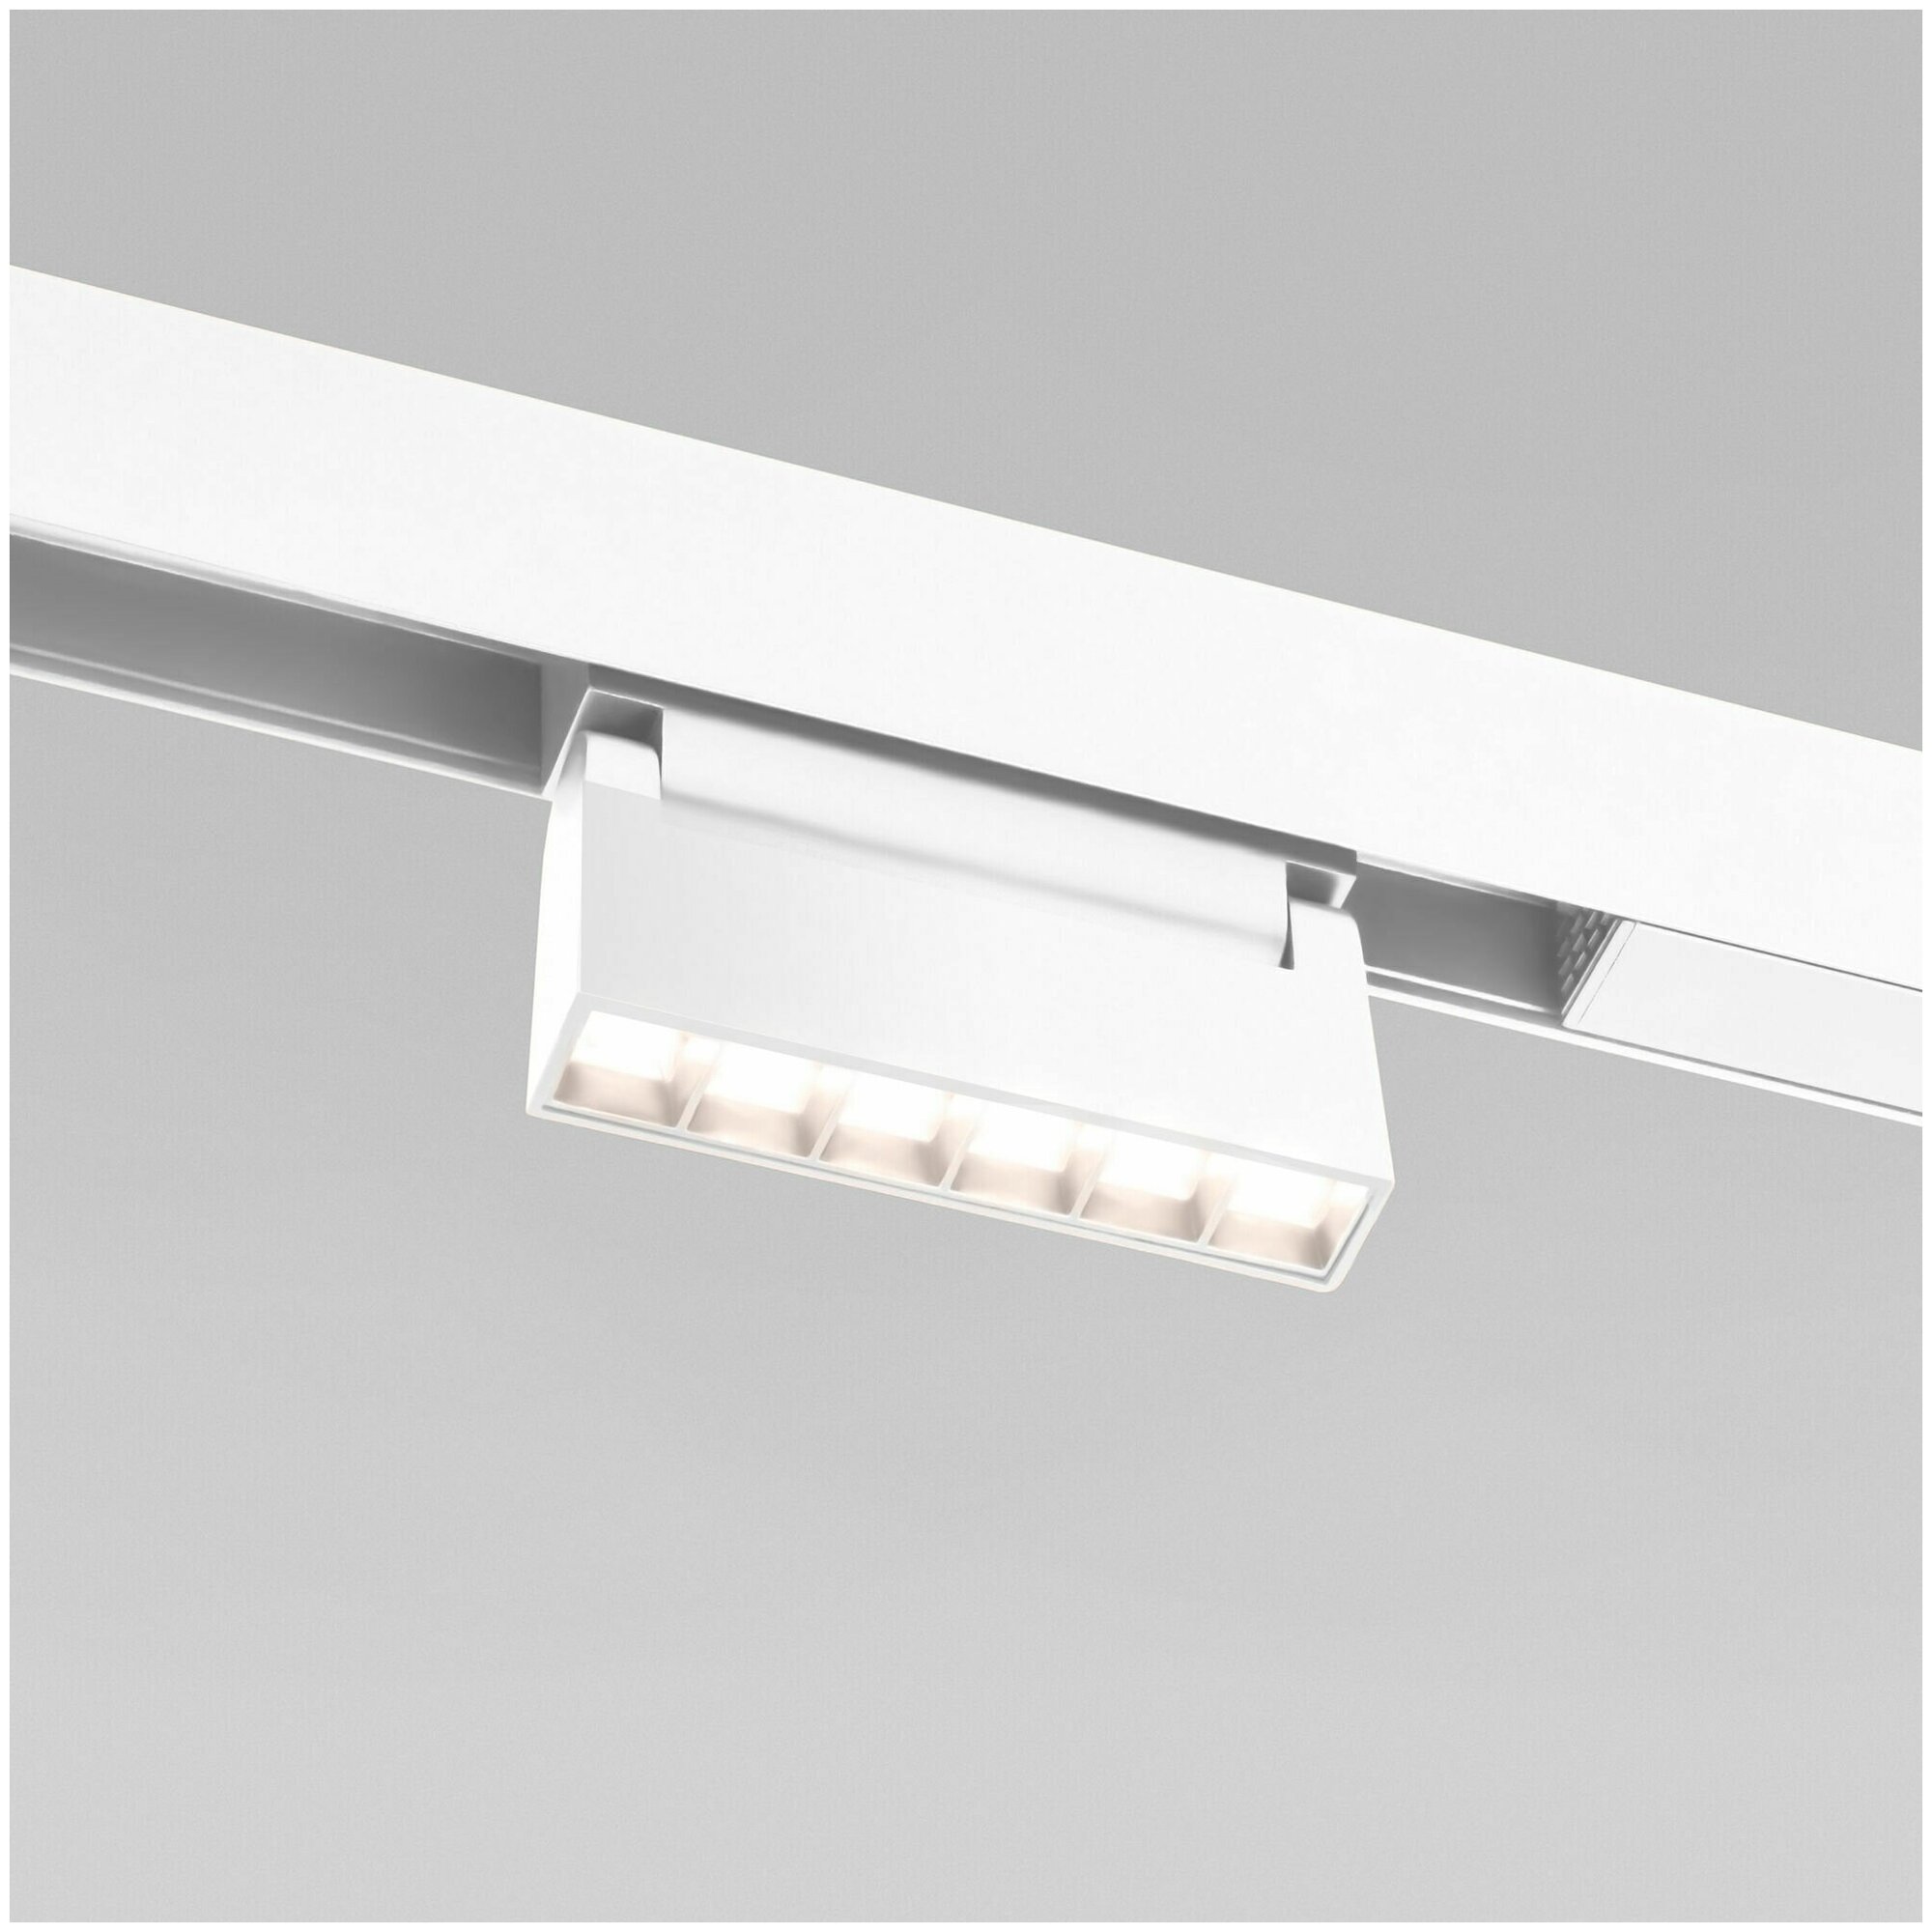 Трековый светодиодный светильник с поворотным механизмом Elektrostandard Slim Magnetic HL01 85009/01, 6 Вт, 4200 K, цвет белый